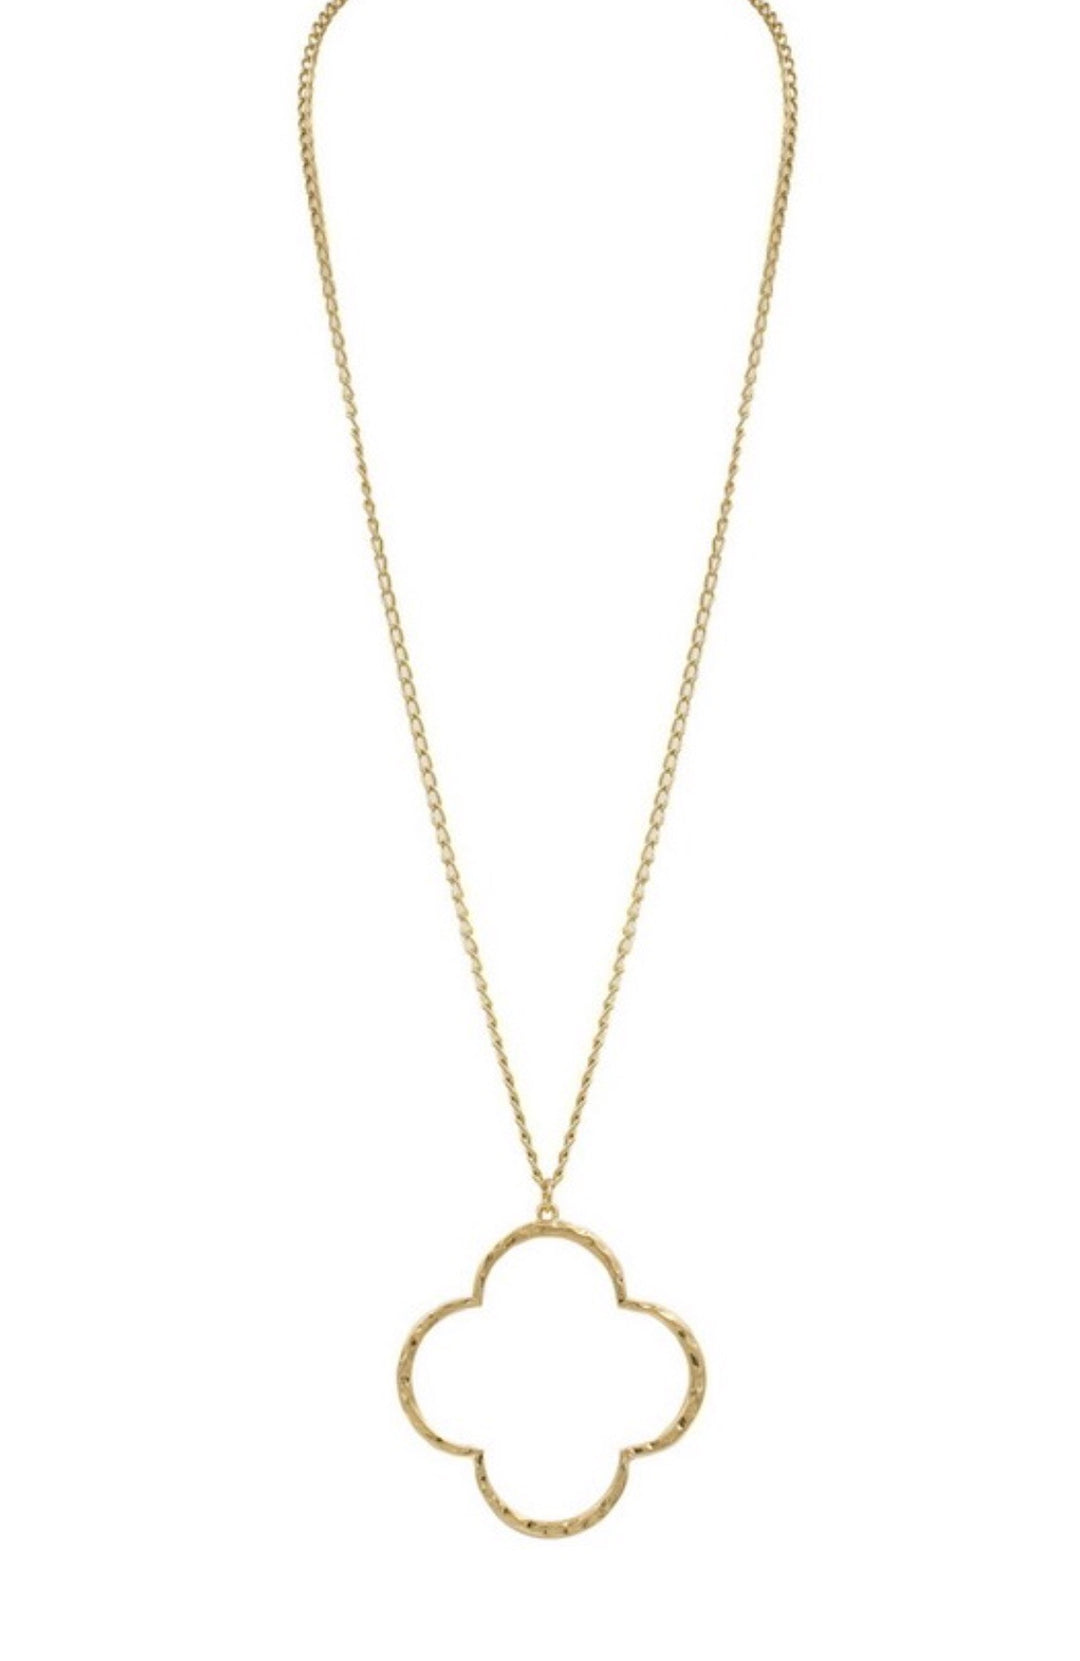 Quatrefoil Hammered Necklace - Gold